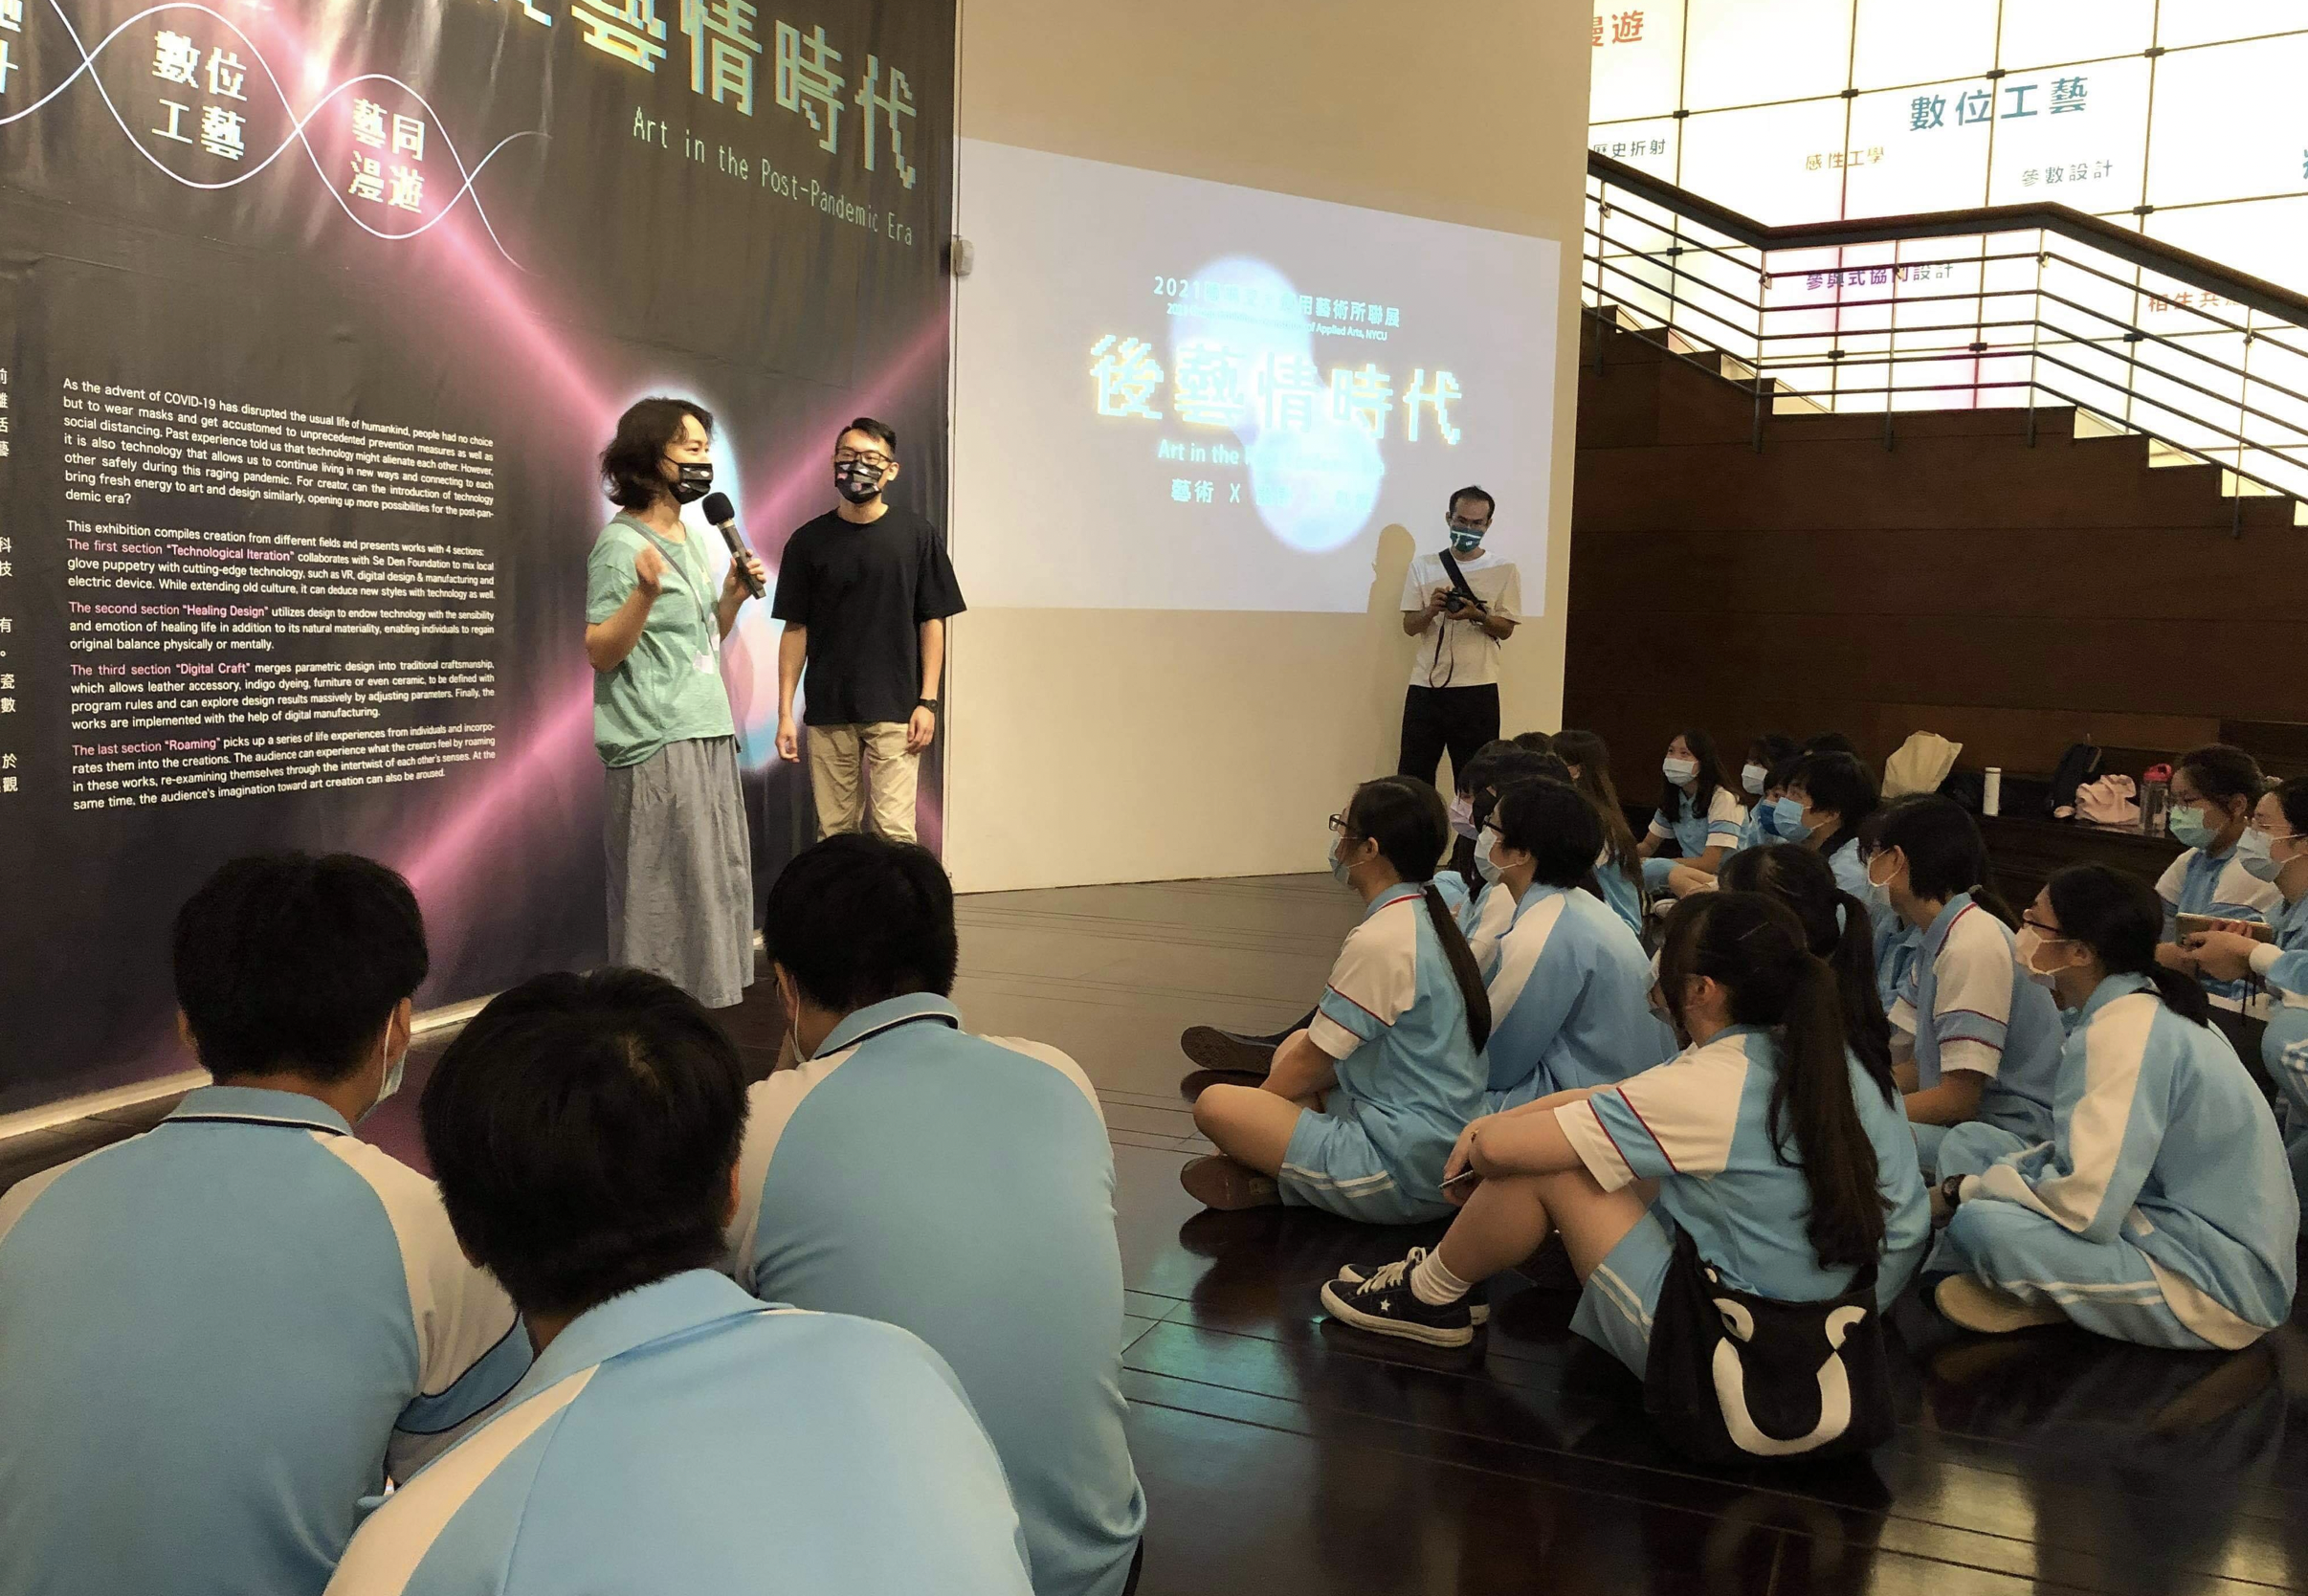 新竹光復高中藍慧禎主任帶領同學到展覽會場觀賞作品